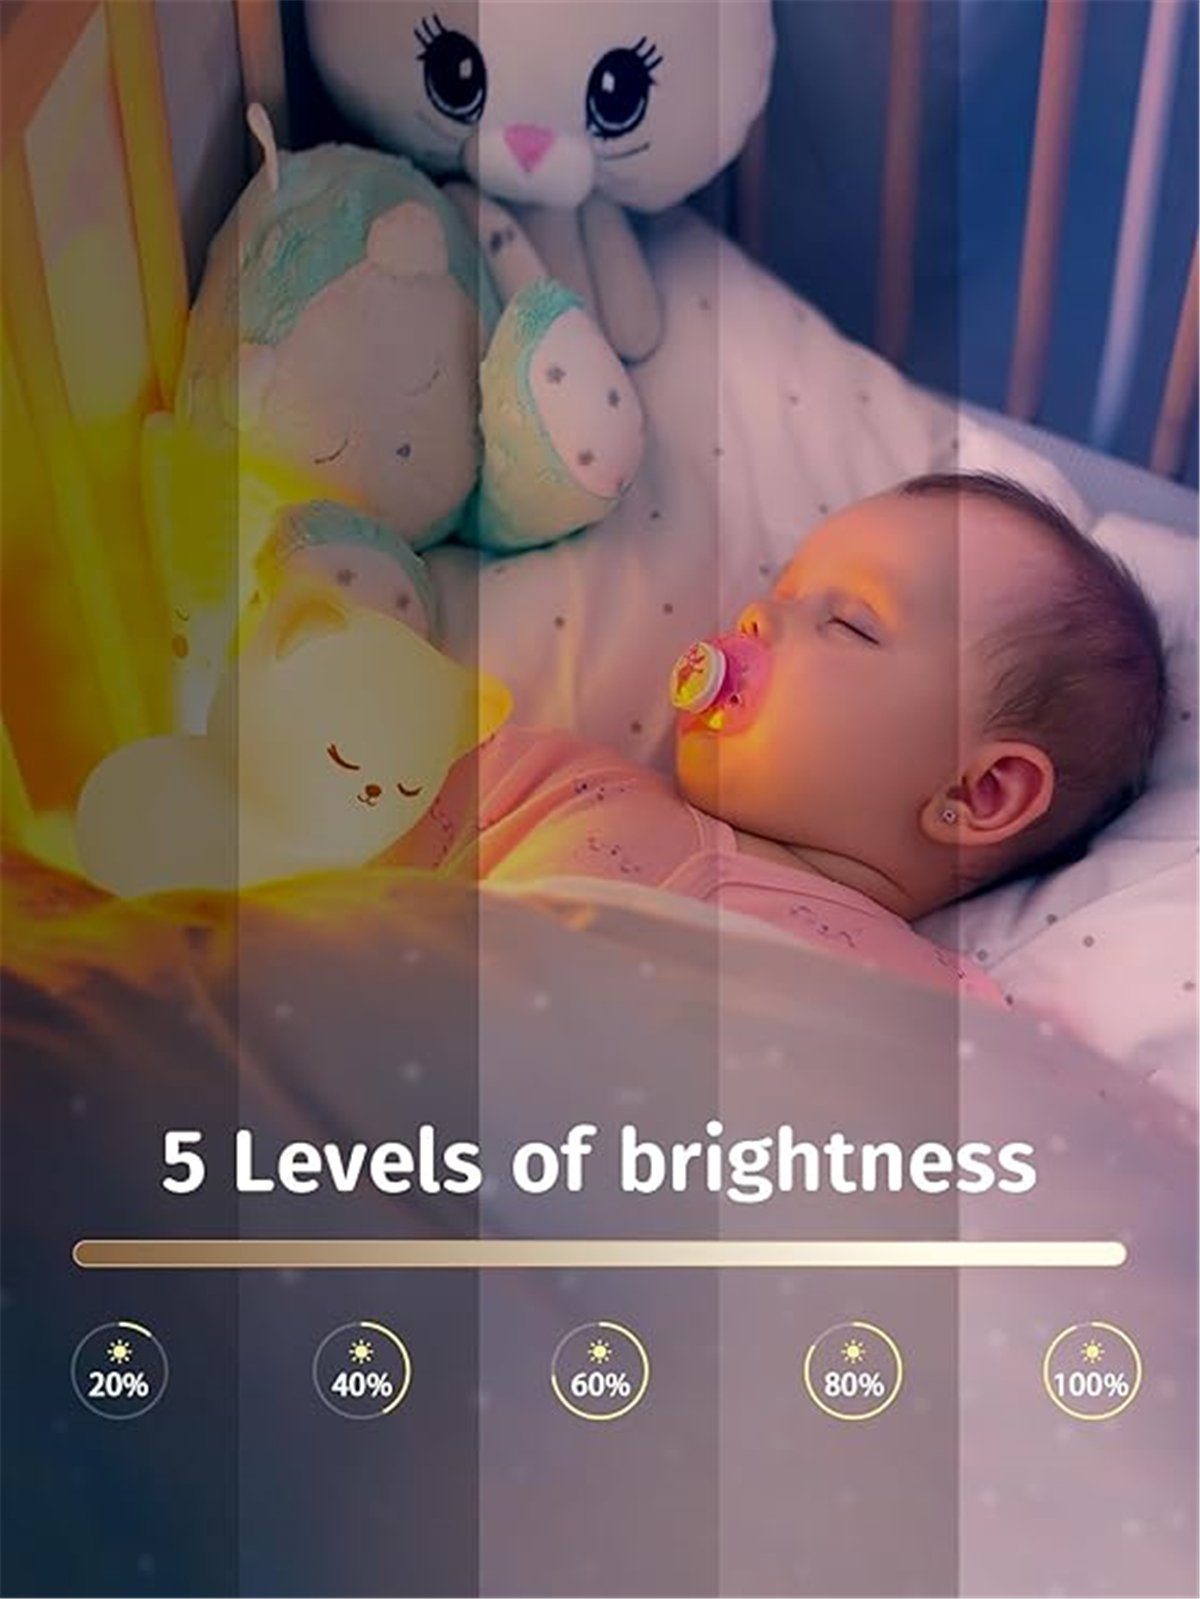 Nachtlicht K&B Baby Kawaii LED Kinder Nachtlicht 16 Nachttischlampe Farben für Dekoration